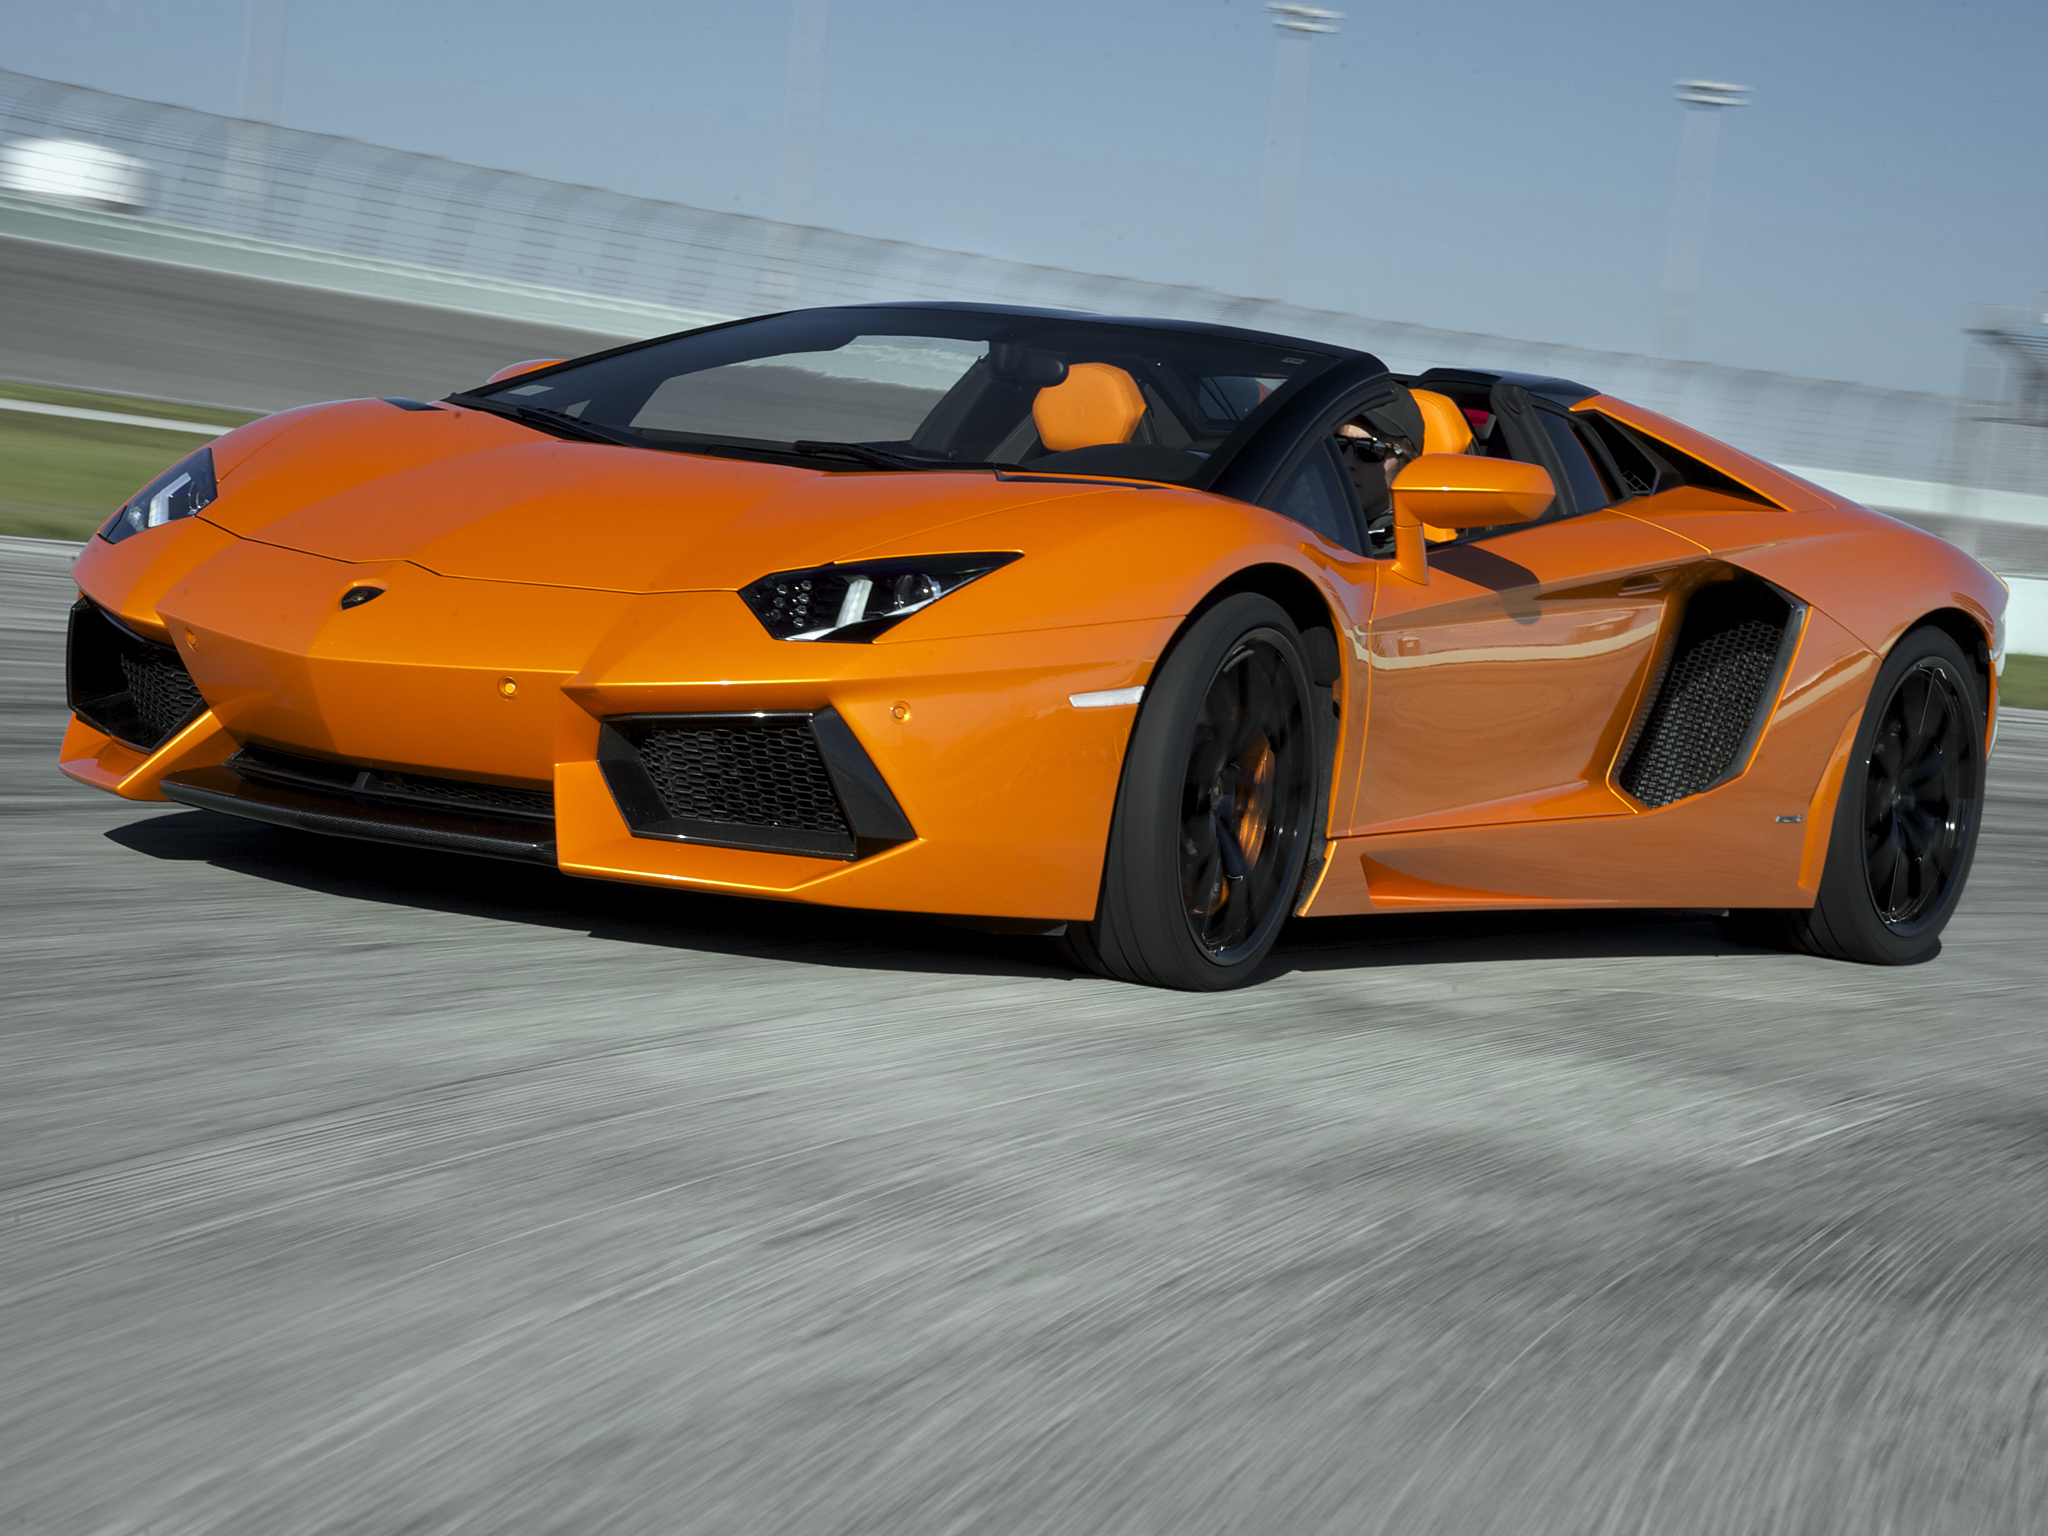 2014, Lamborghini, Aventador, Lp700 4, Roadster, Supercar, Orange Wallpaper